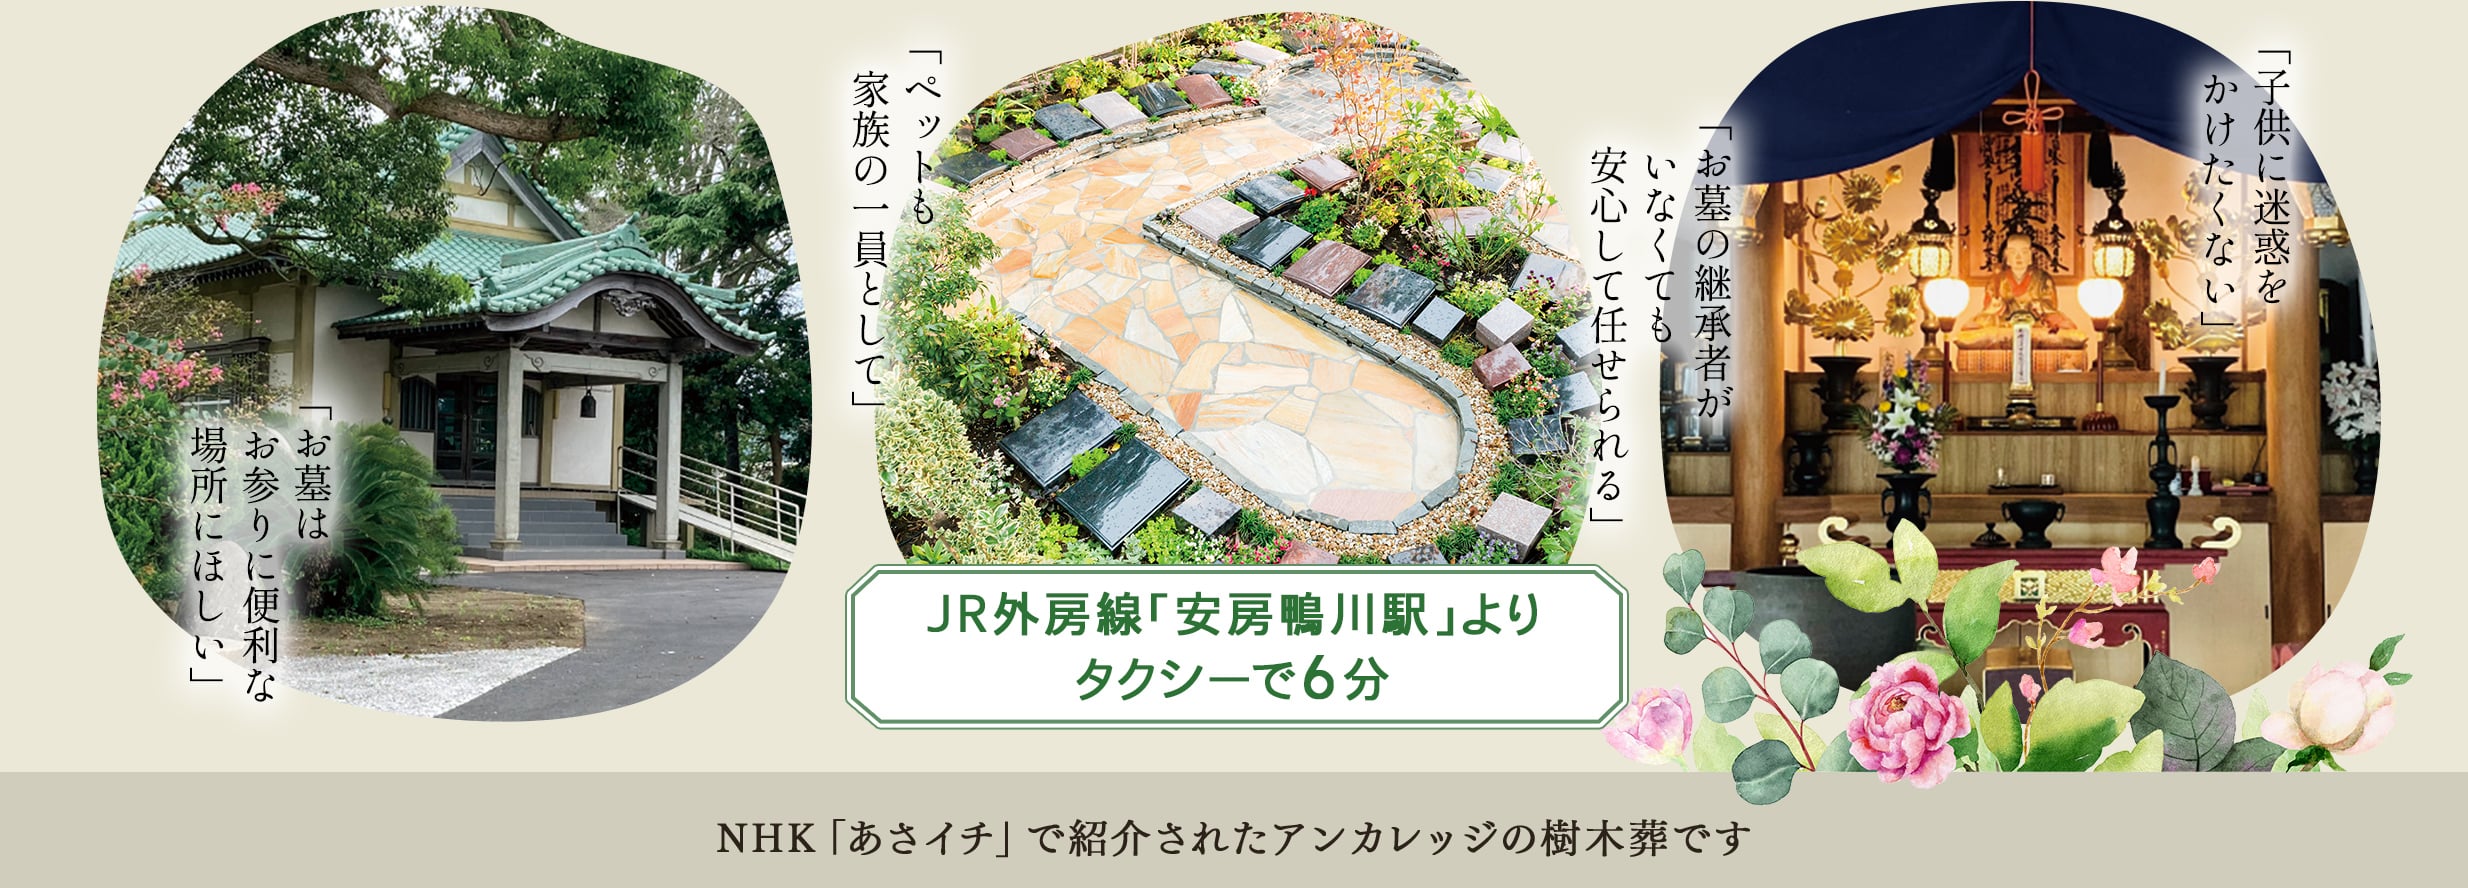 JR外房線「安房鴨川駅」よりタクシーで6分　NHKあさイチで紹介されたアンカレッジの庭苑です。